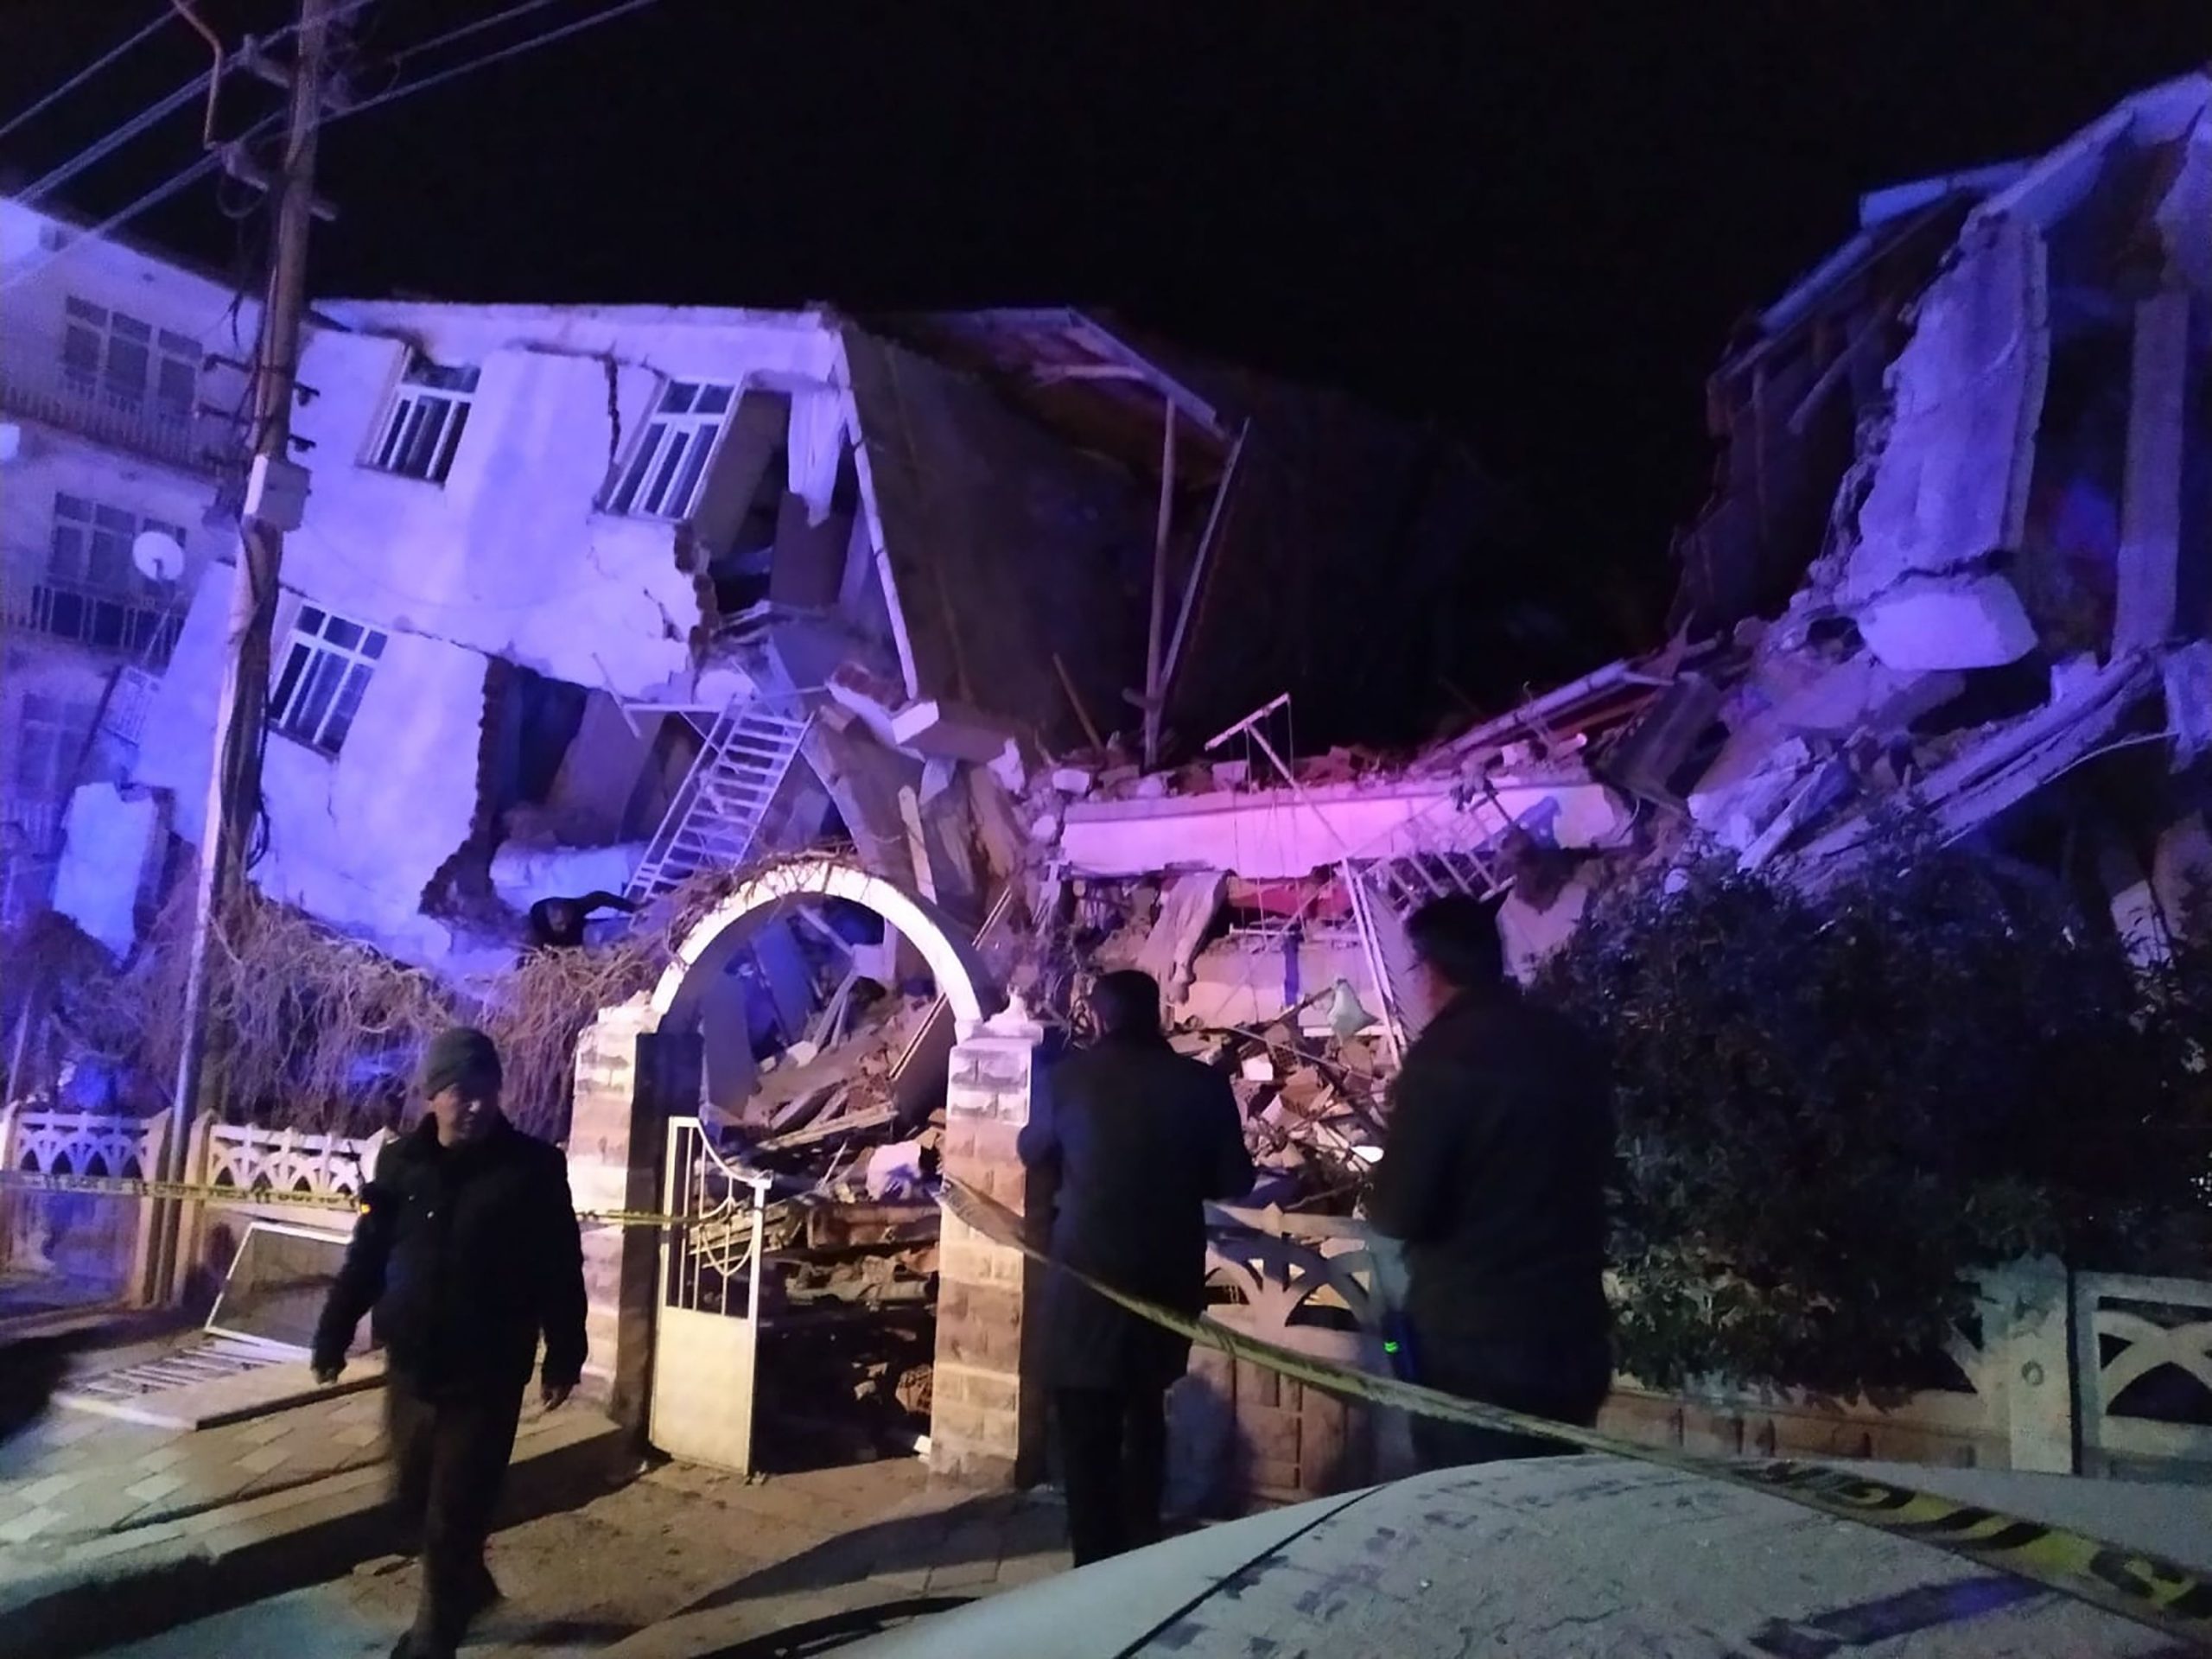 ارتفاع حصيلة ضحايا زلزال تركيا إلى 21 قتيلا